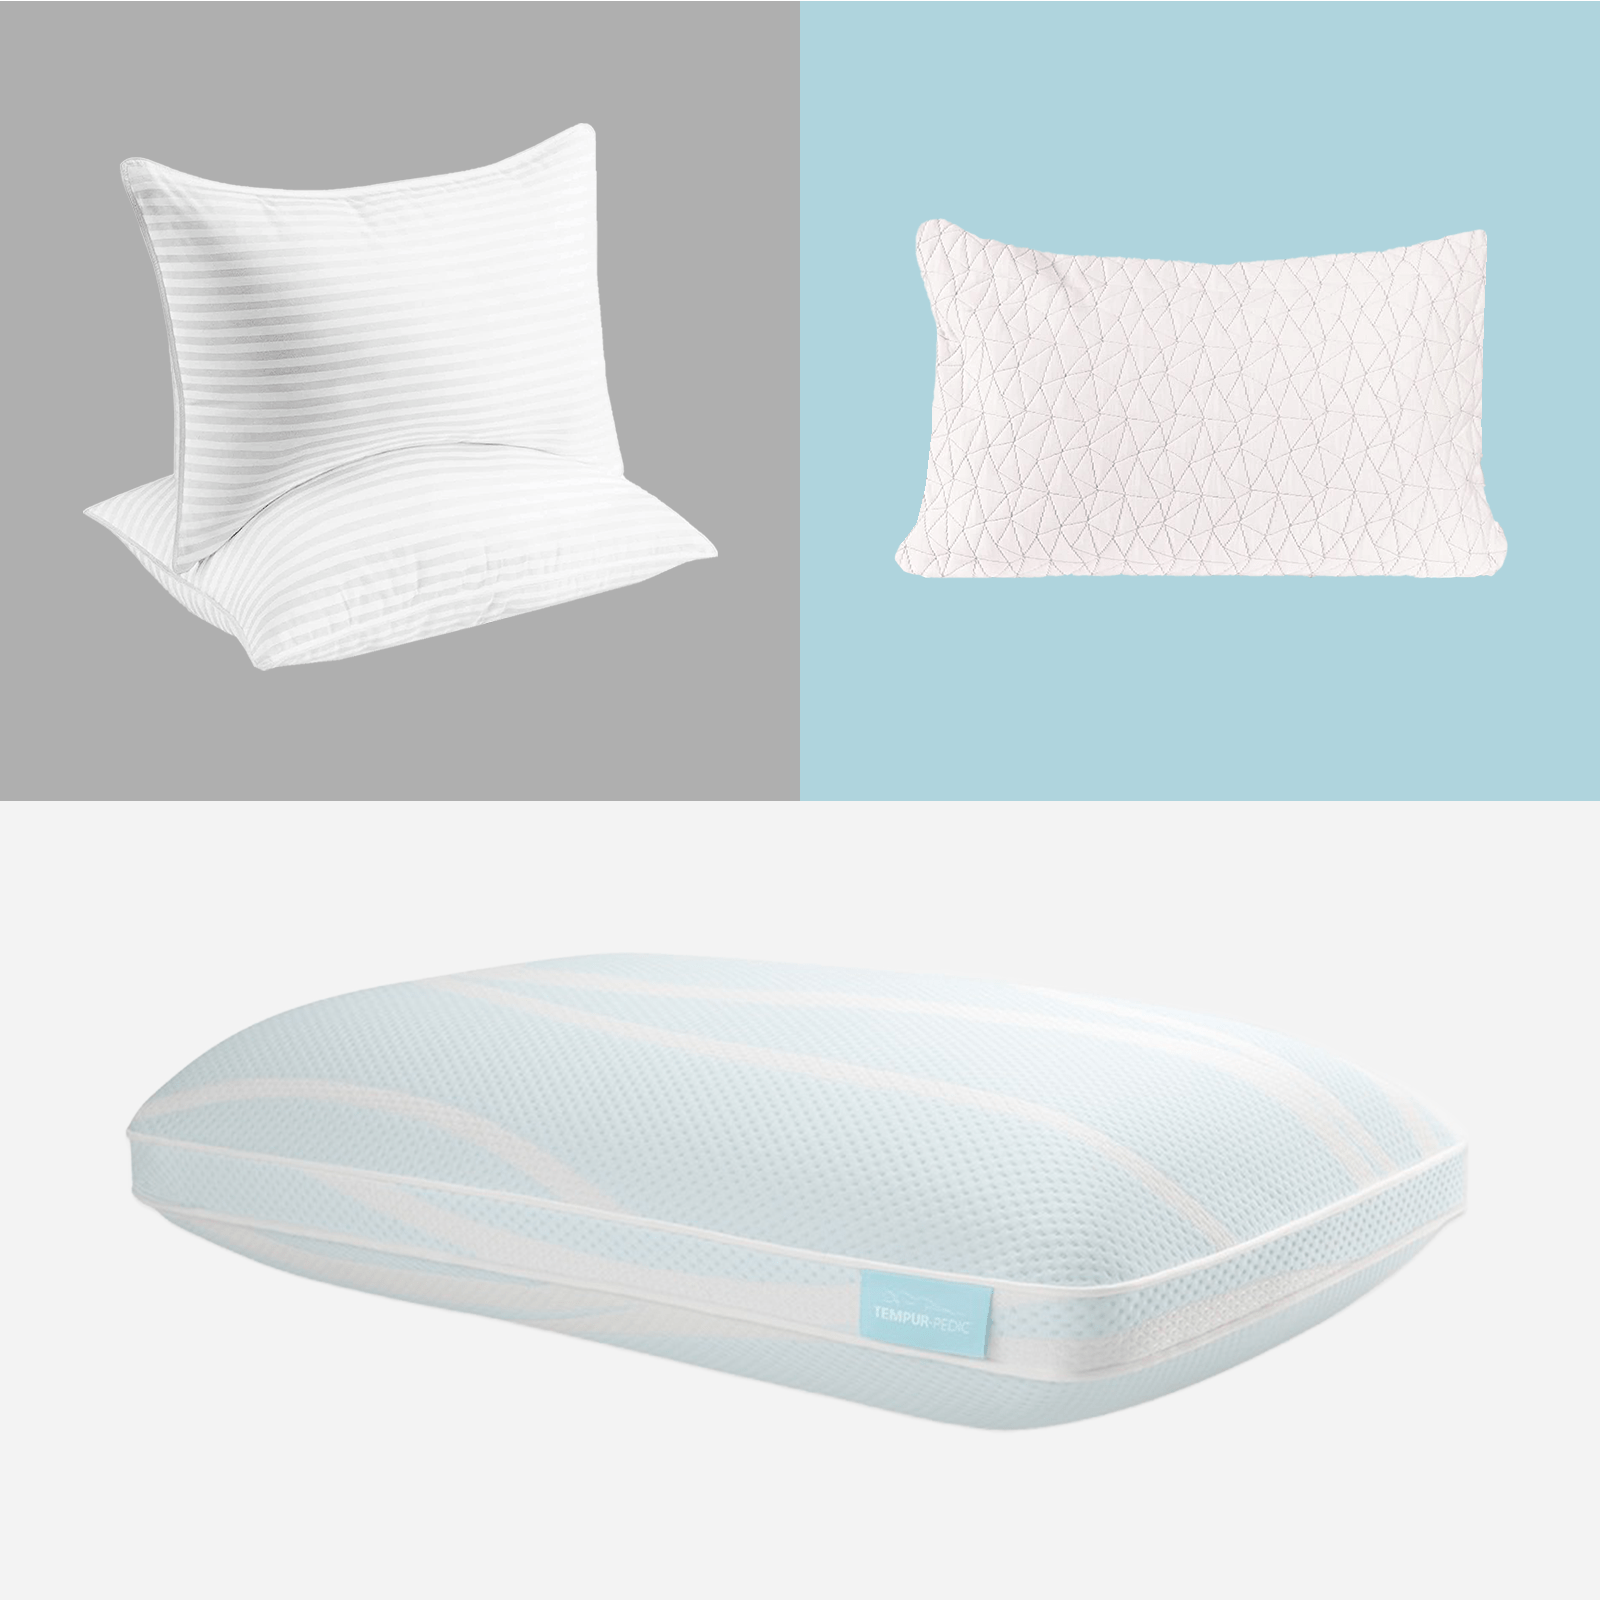 https://www.rd.com/wp-content/uploads/2023/01/best-cooling-pillows-ft-via-merchant.png